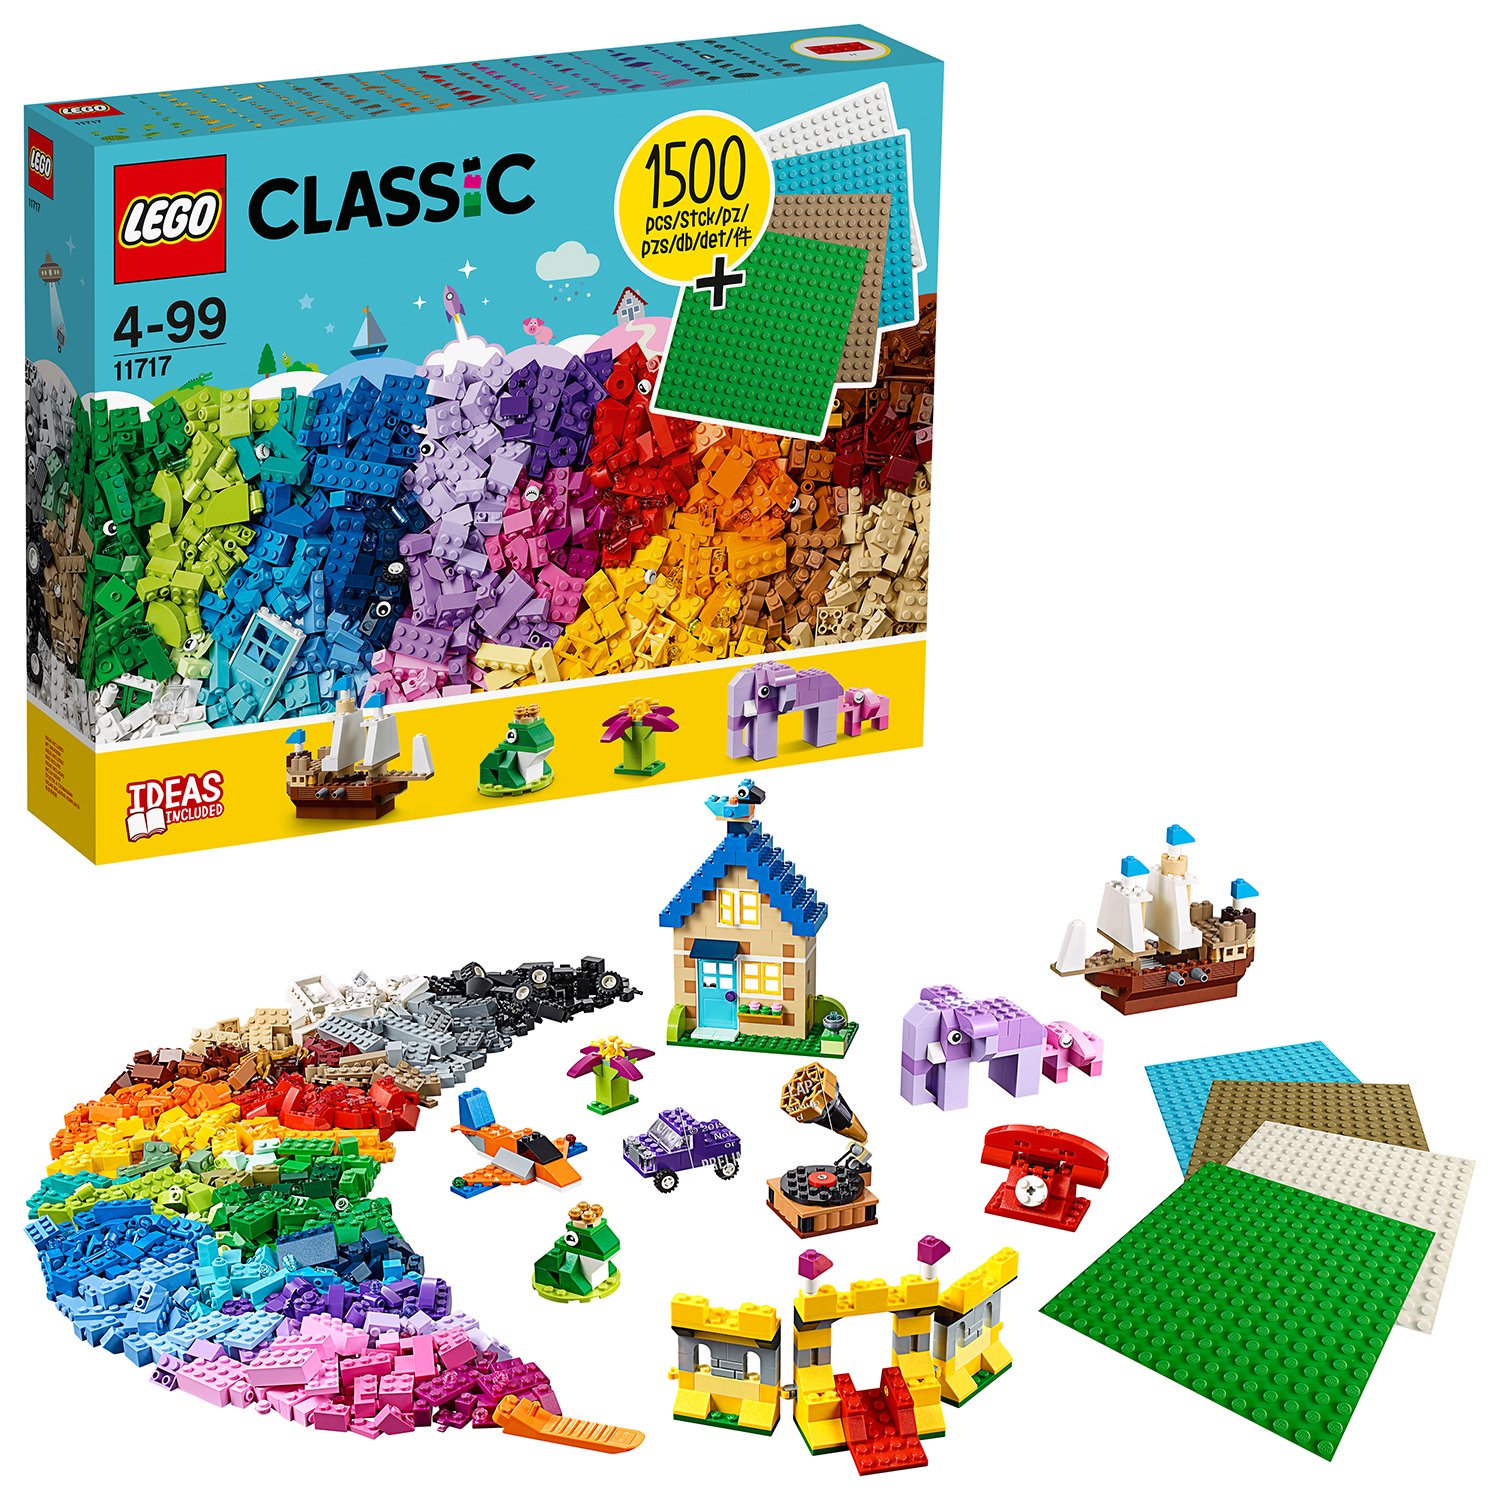 LEGO Classic Bricks Bricks Plates Review